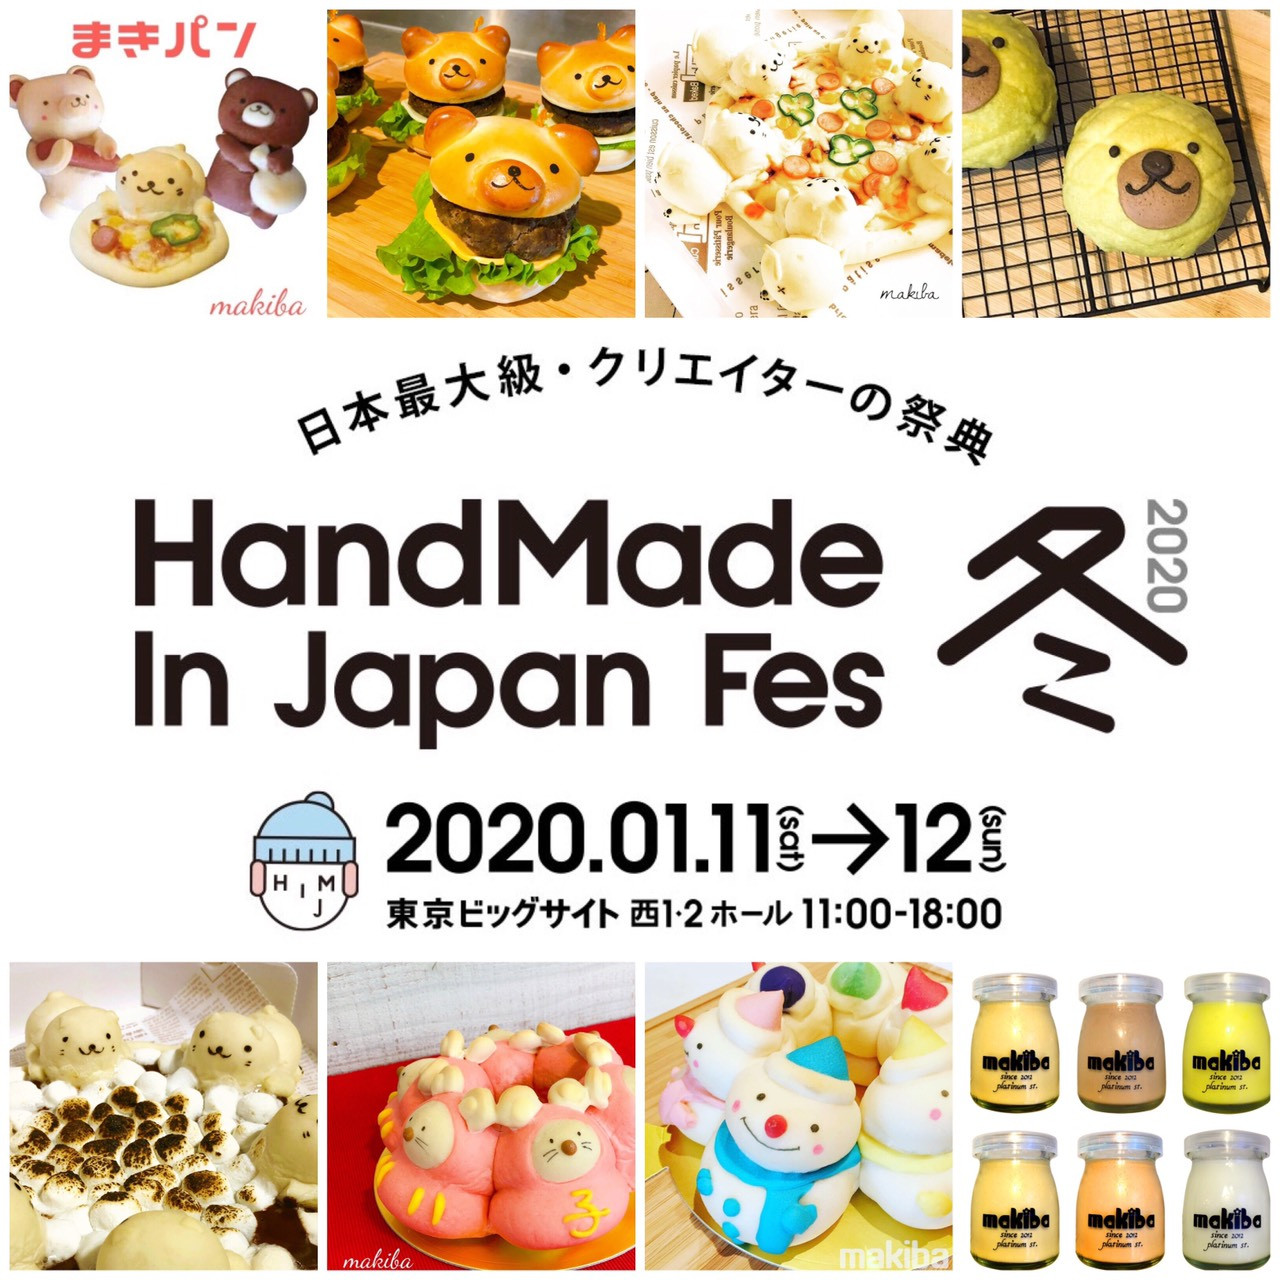 HandMade in Japan Fes,（1月11日・12日 東京ビックサイト）に出店します